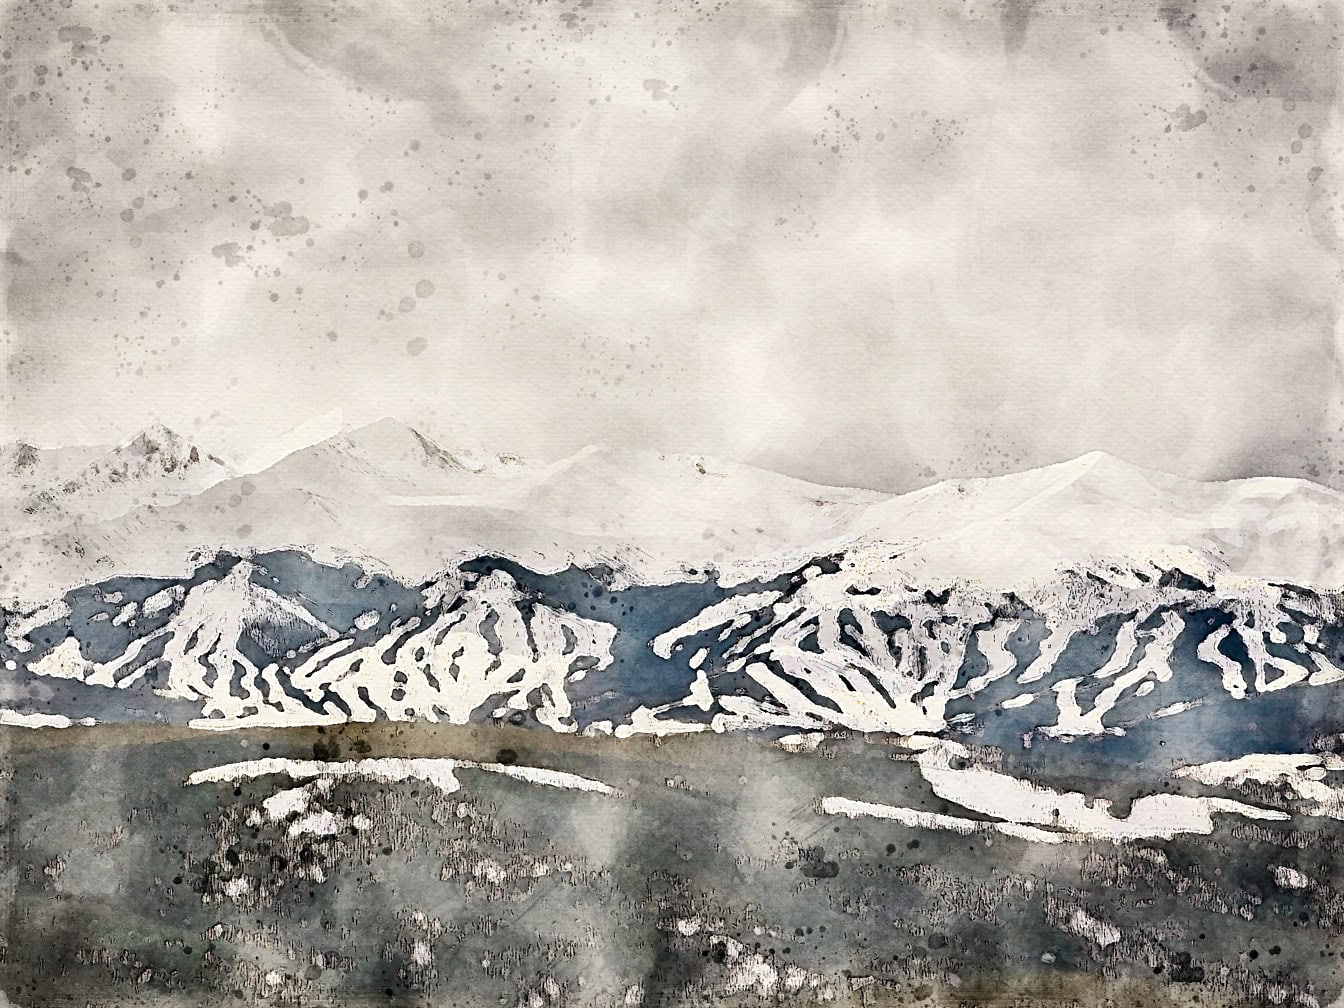 Pittura ad acquerello astratta di una catena montuosa con cime montuose innevate